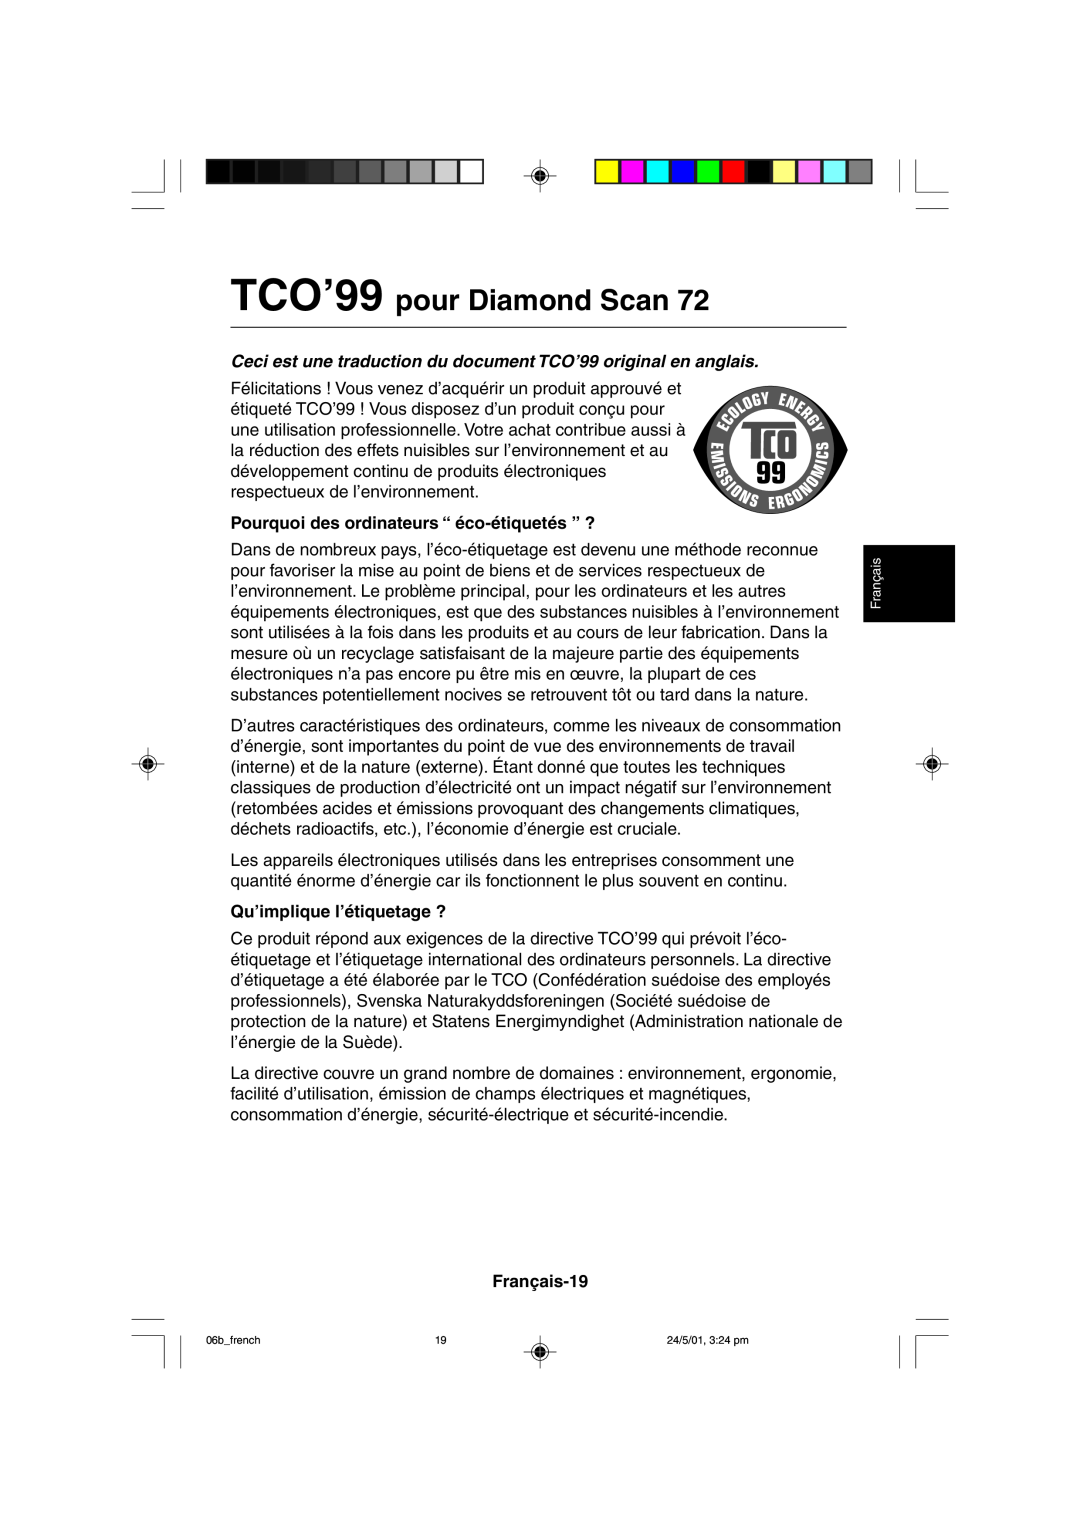 Mitsubishi Electronics M557 TCO’99 pour Diamond Scan, Ceci est une traduction du document TCO’99 original en anglais 